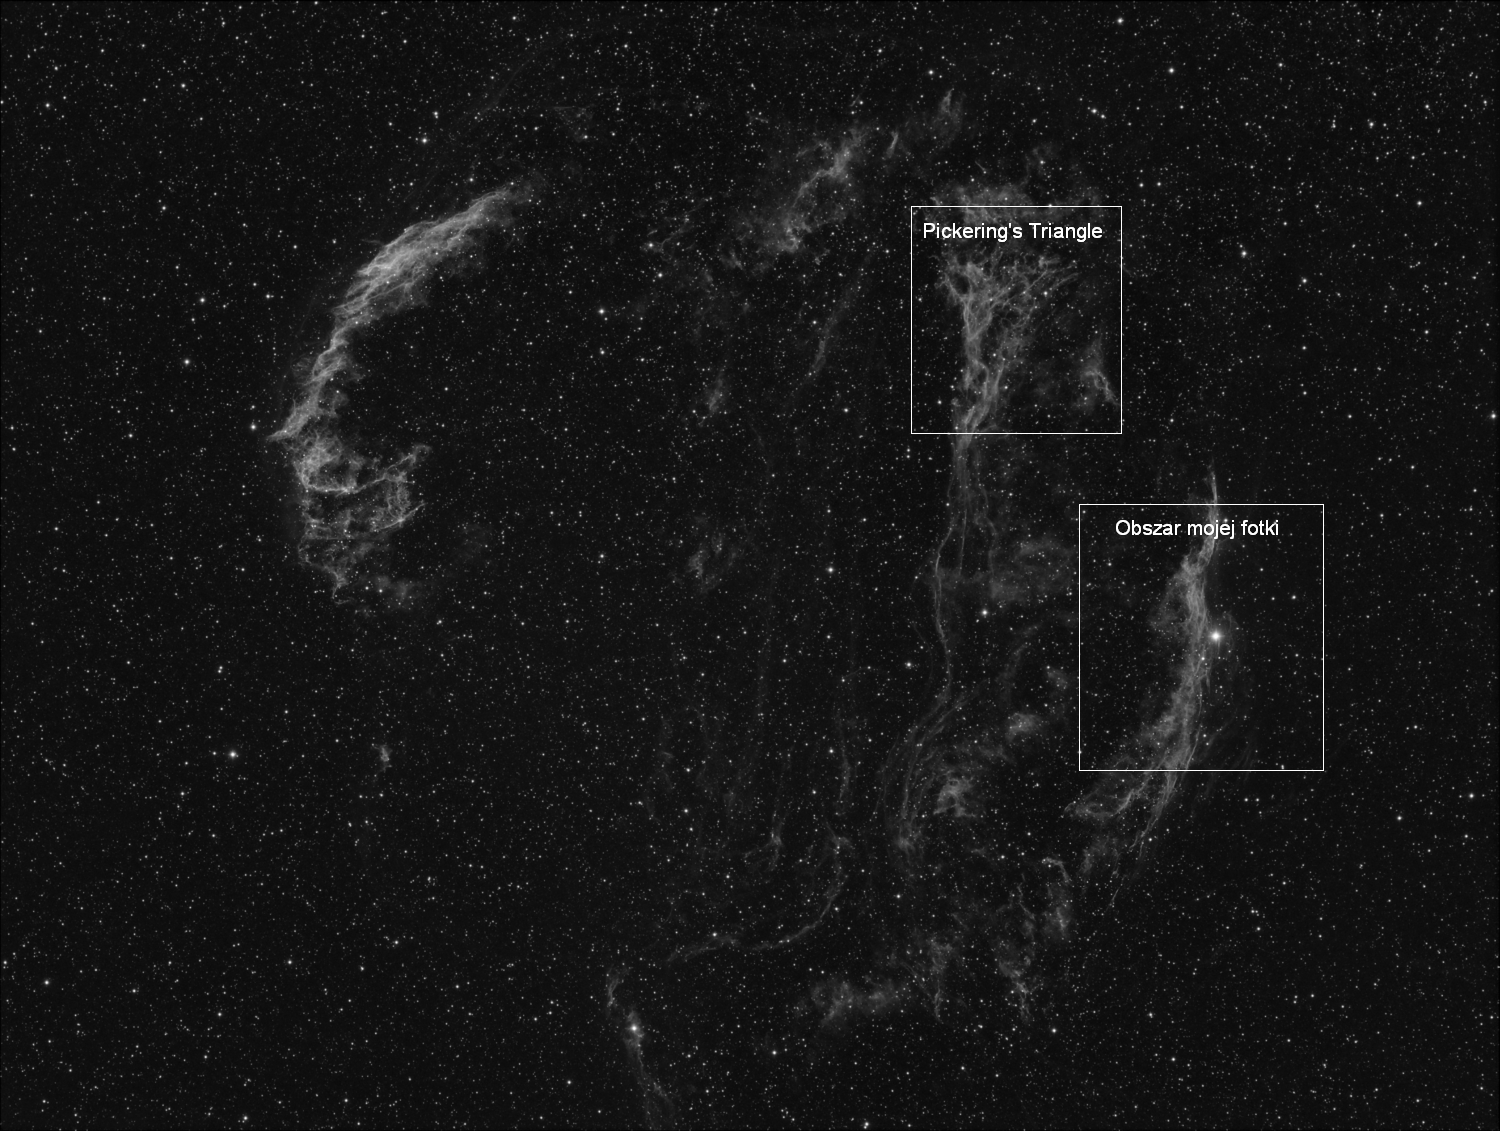 cygni_nebula_piotr.png.d81b0a809771baf76e3f978148b3de4c.png